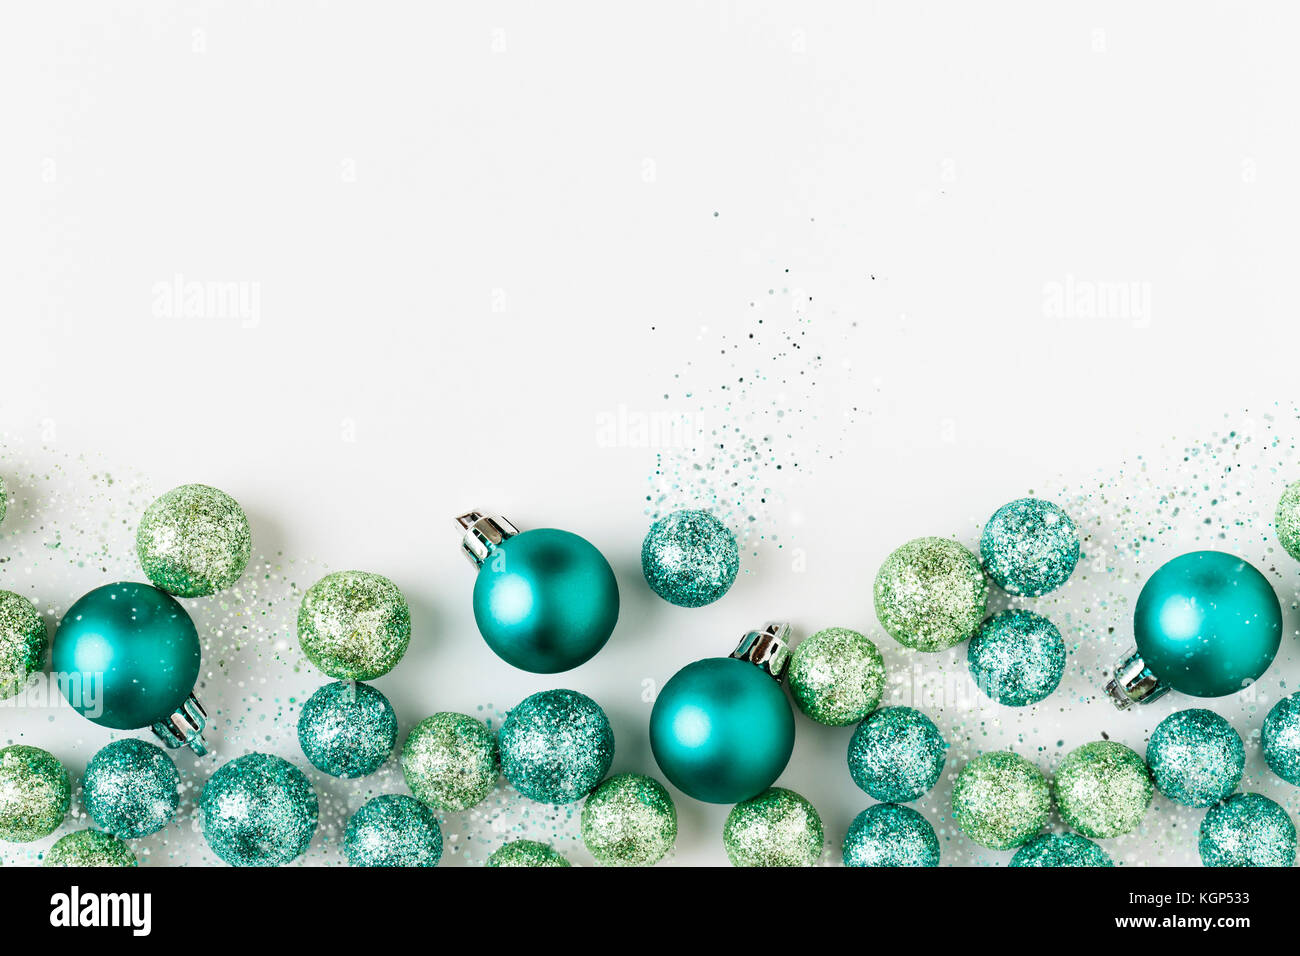 Hermosa, brillante, moderno, azul y verde, adornos de Navidad adornos con purpurina brillantes sobre fondo blanco. Borde horizontal. Foto de stock